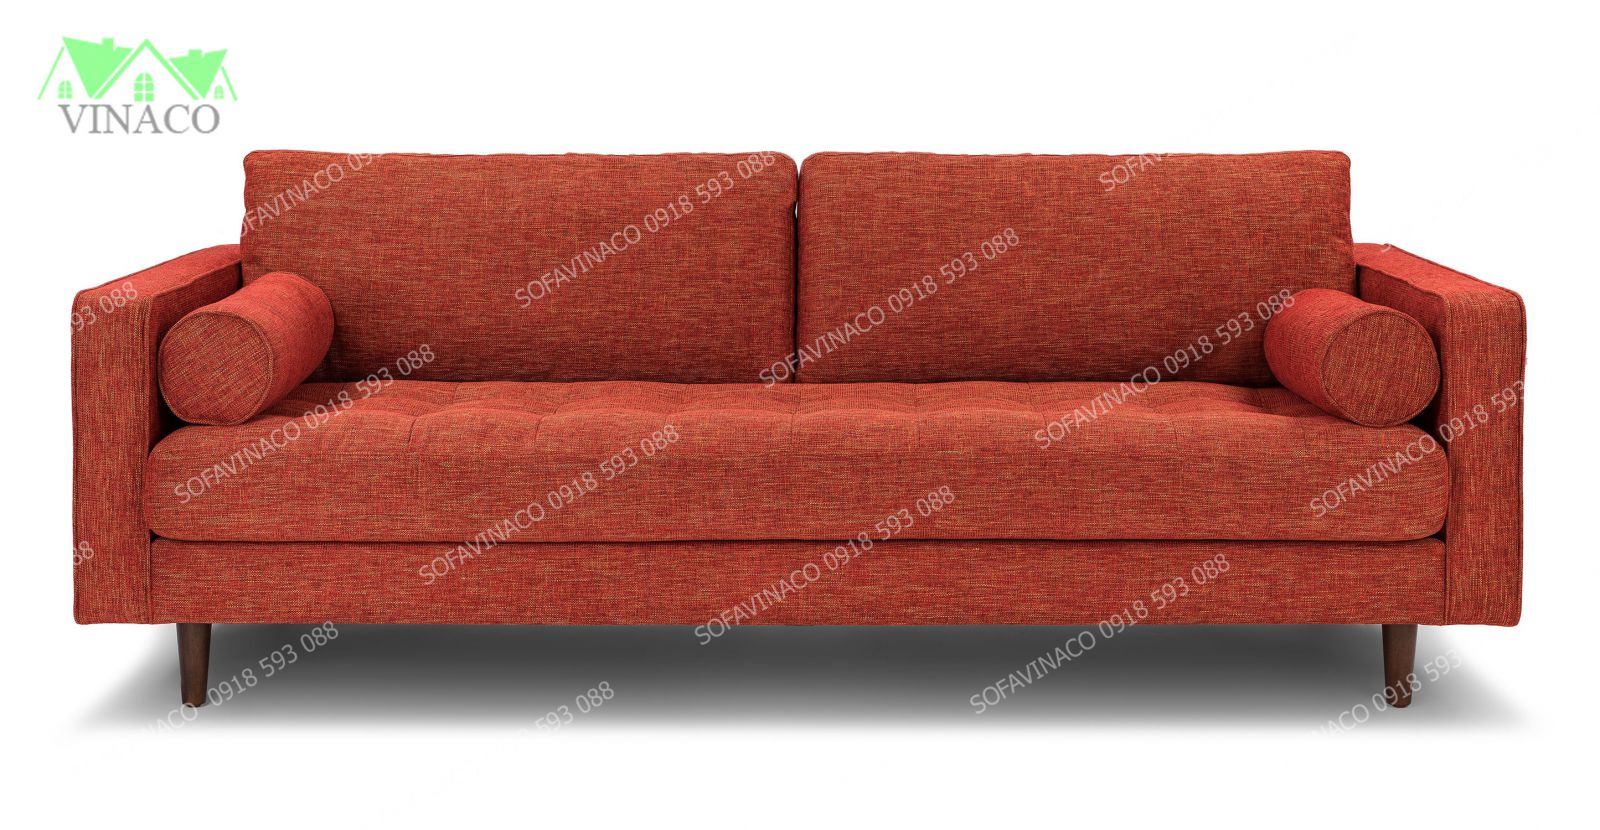 Mẫu ghế sofa đẹp có thiết kế đơn giản